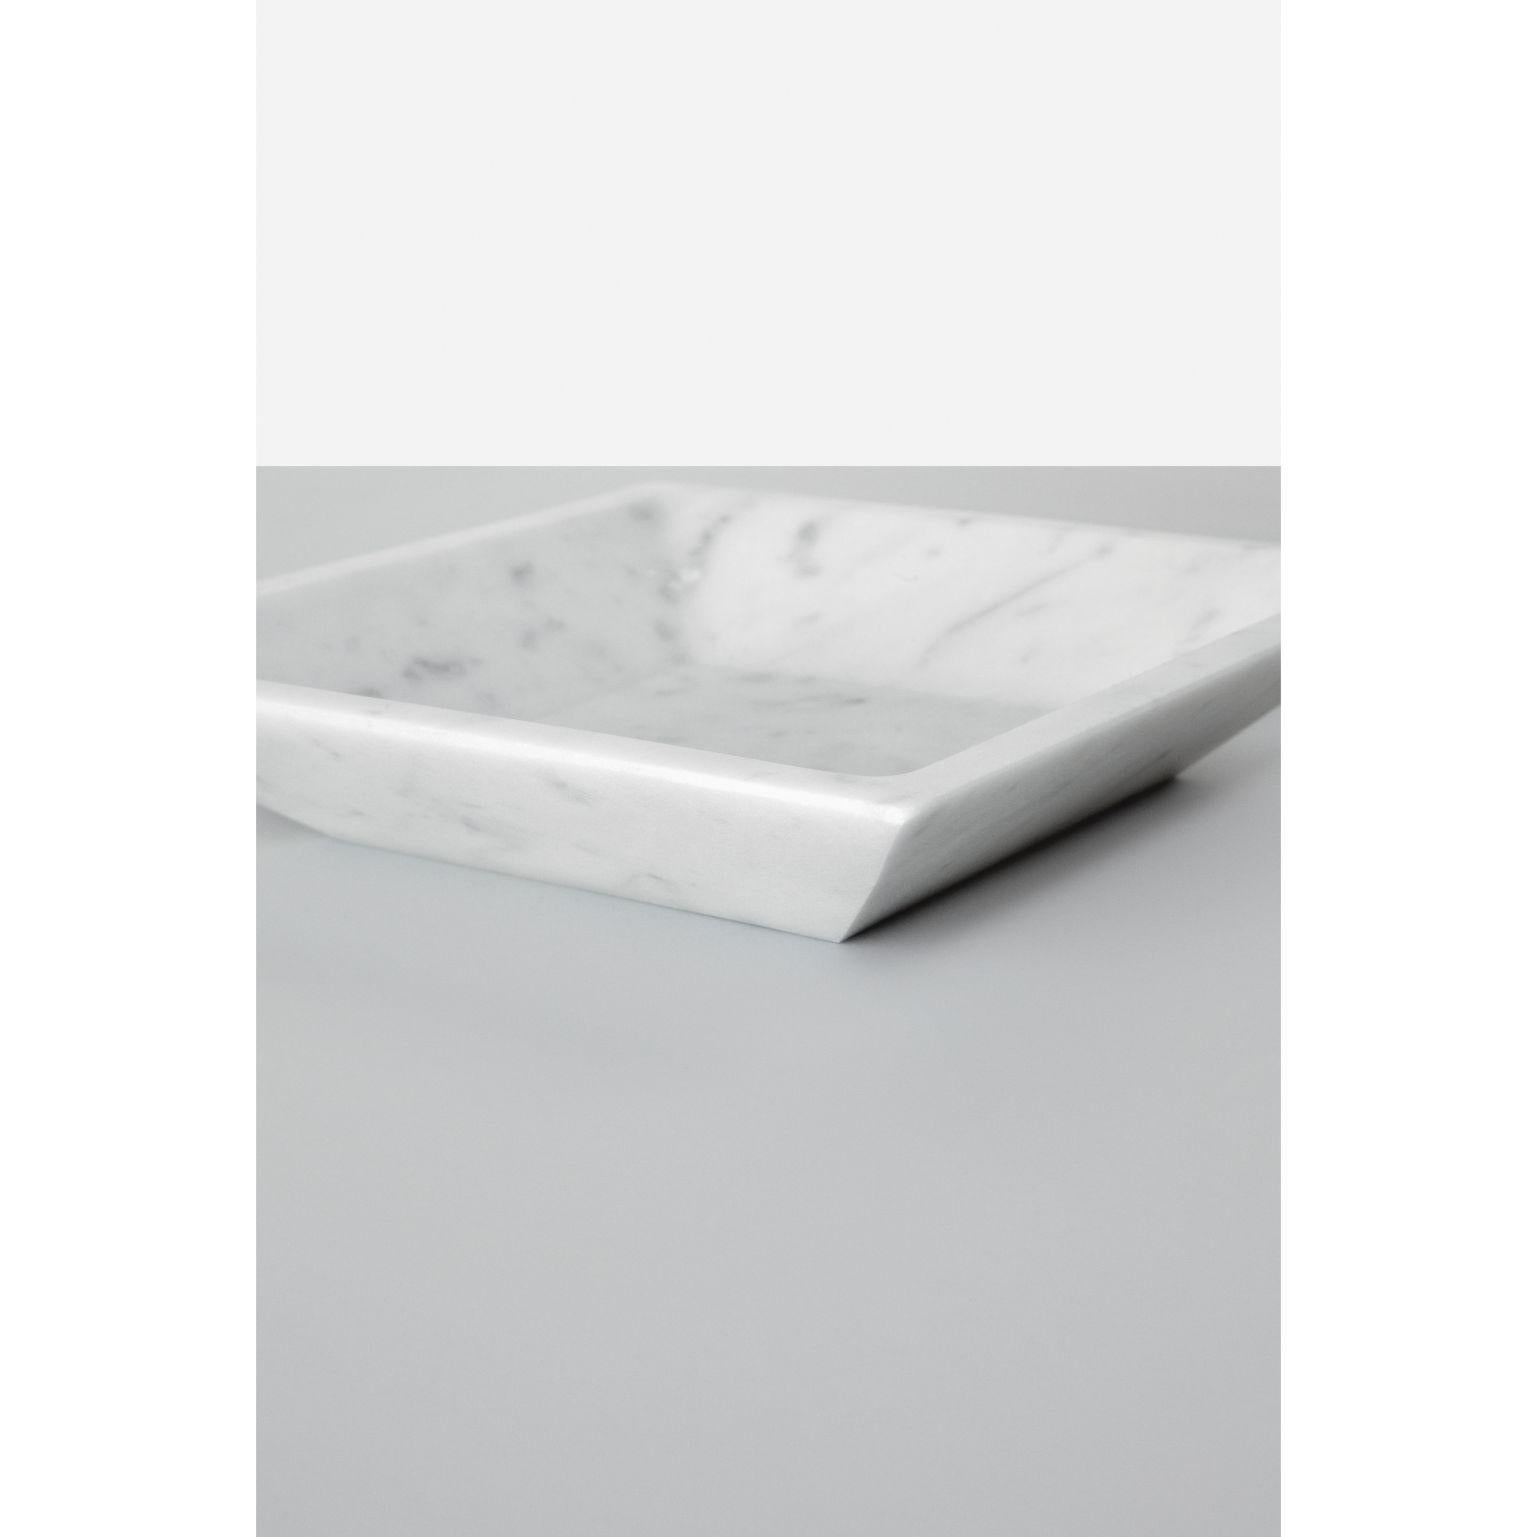 Quadratischer fondo-teller von Studioformart
Total Marble Collection'S
Abmessungen: 20 x 20 x 4 cm
MATERIALIEN: Bianco Carrara

Die Geschichte der Marmorschnitzerei verliert sich in der Zeit; sie führt uns in einem Atemzug zurück ins IV.